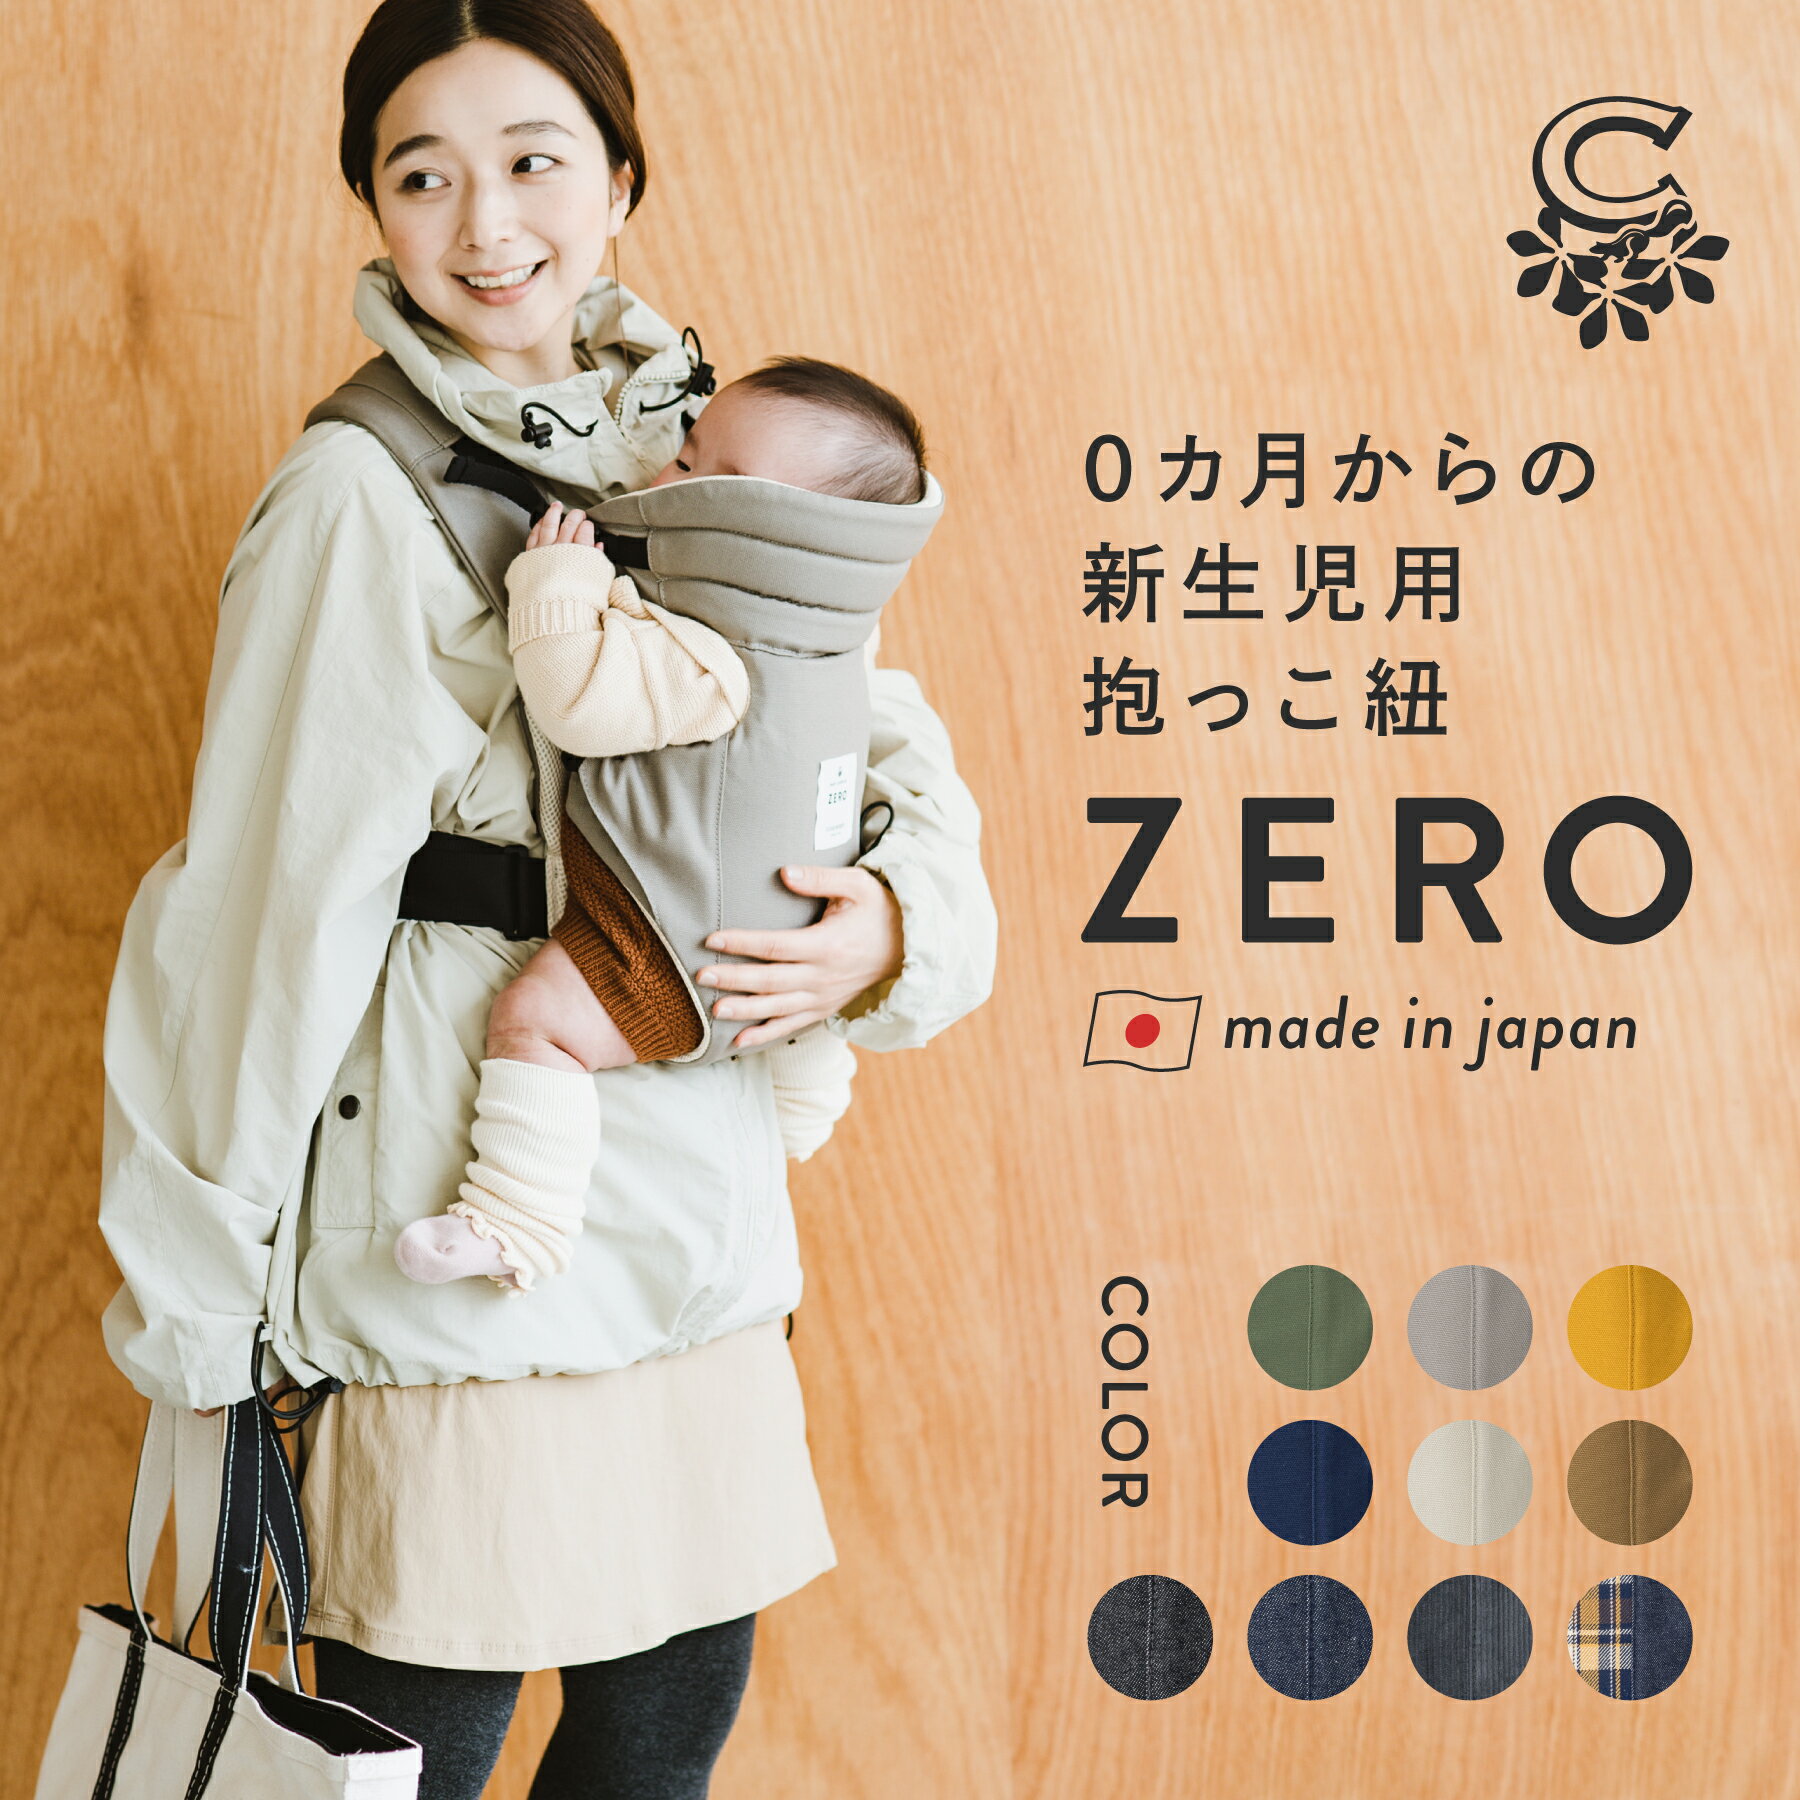 抱っこ紐 新生児 日本製 キューズベリー ZERO 新生児から使える 縦抱き 抱っこひも 0カ月 首すわり前 軽い メッシュ素材 おしゃれ ヘッドサポート コンパクト 簡単 前開き だっこひも ベビーキ…